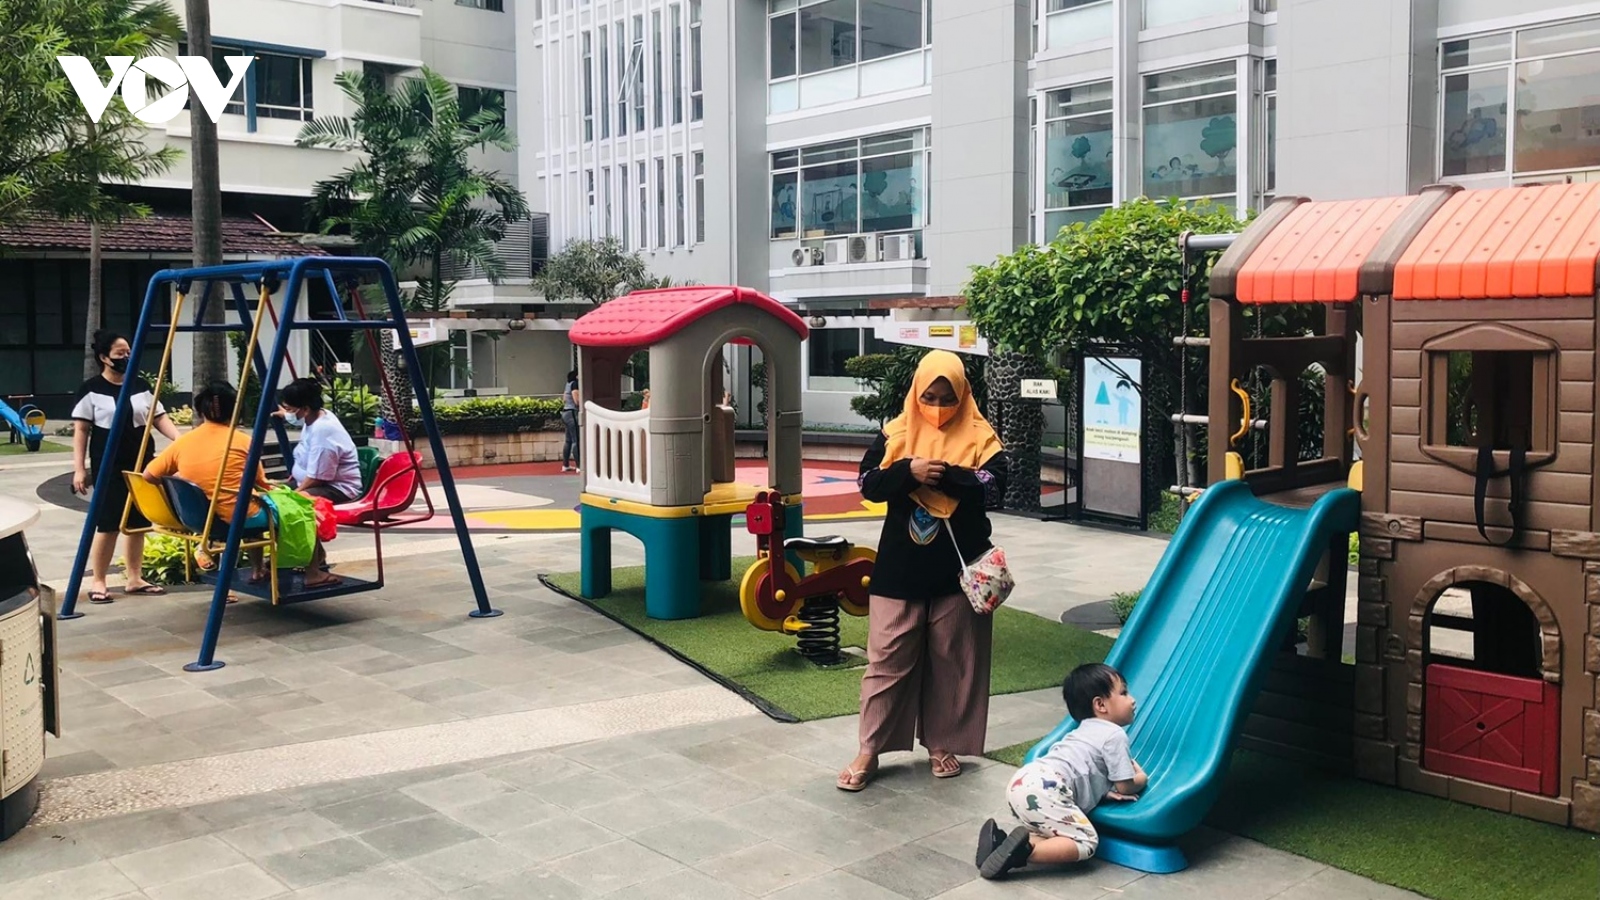 Jakarta (Indonesia) bác bỏ thông tin các sân chơi trẻ em nhiễm sơn độc